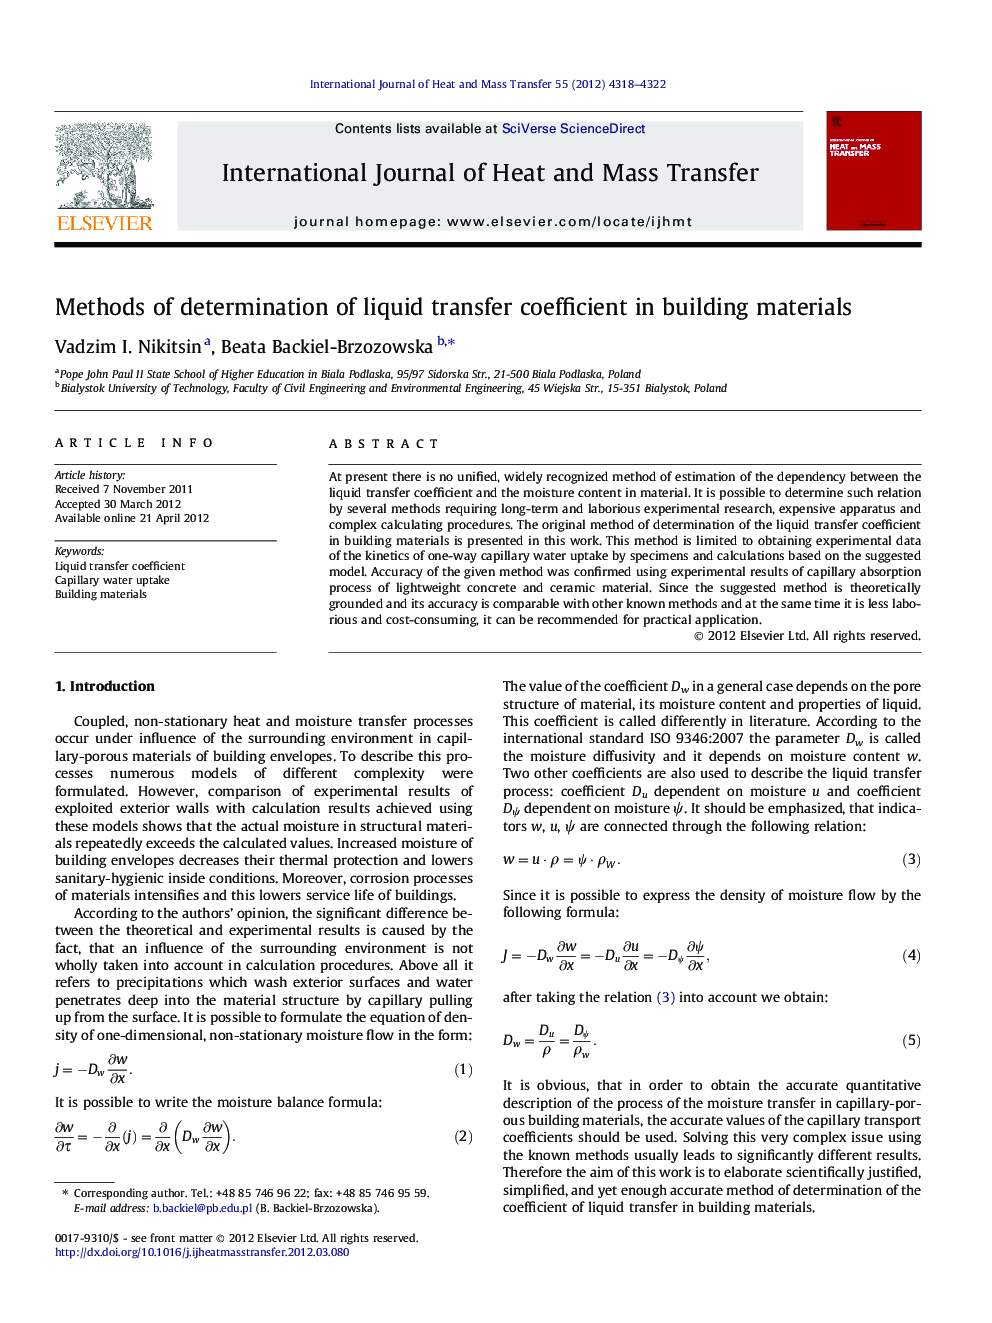 Methods of determination of liquid transfer coefficient in building materials